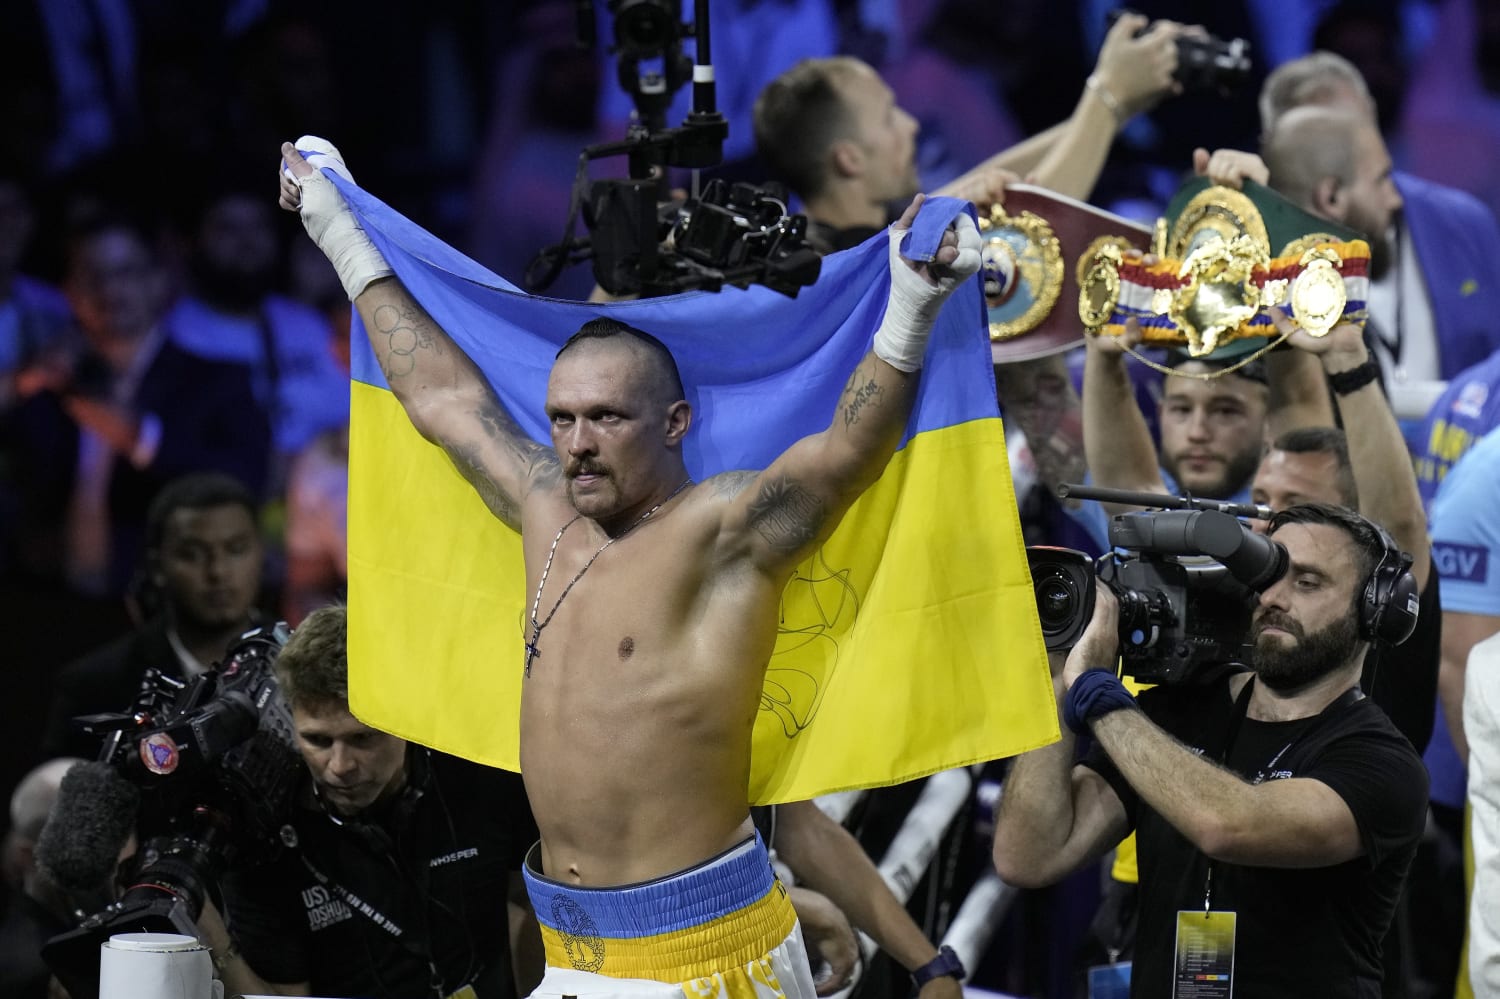 Ukraines Oleksandr Usyk beats Anthony Joshua in boxing heavyweight rematch image photo